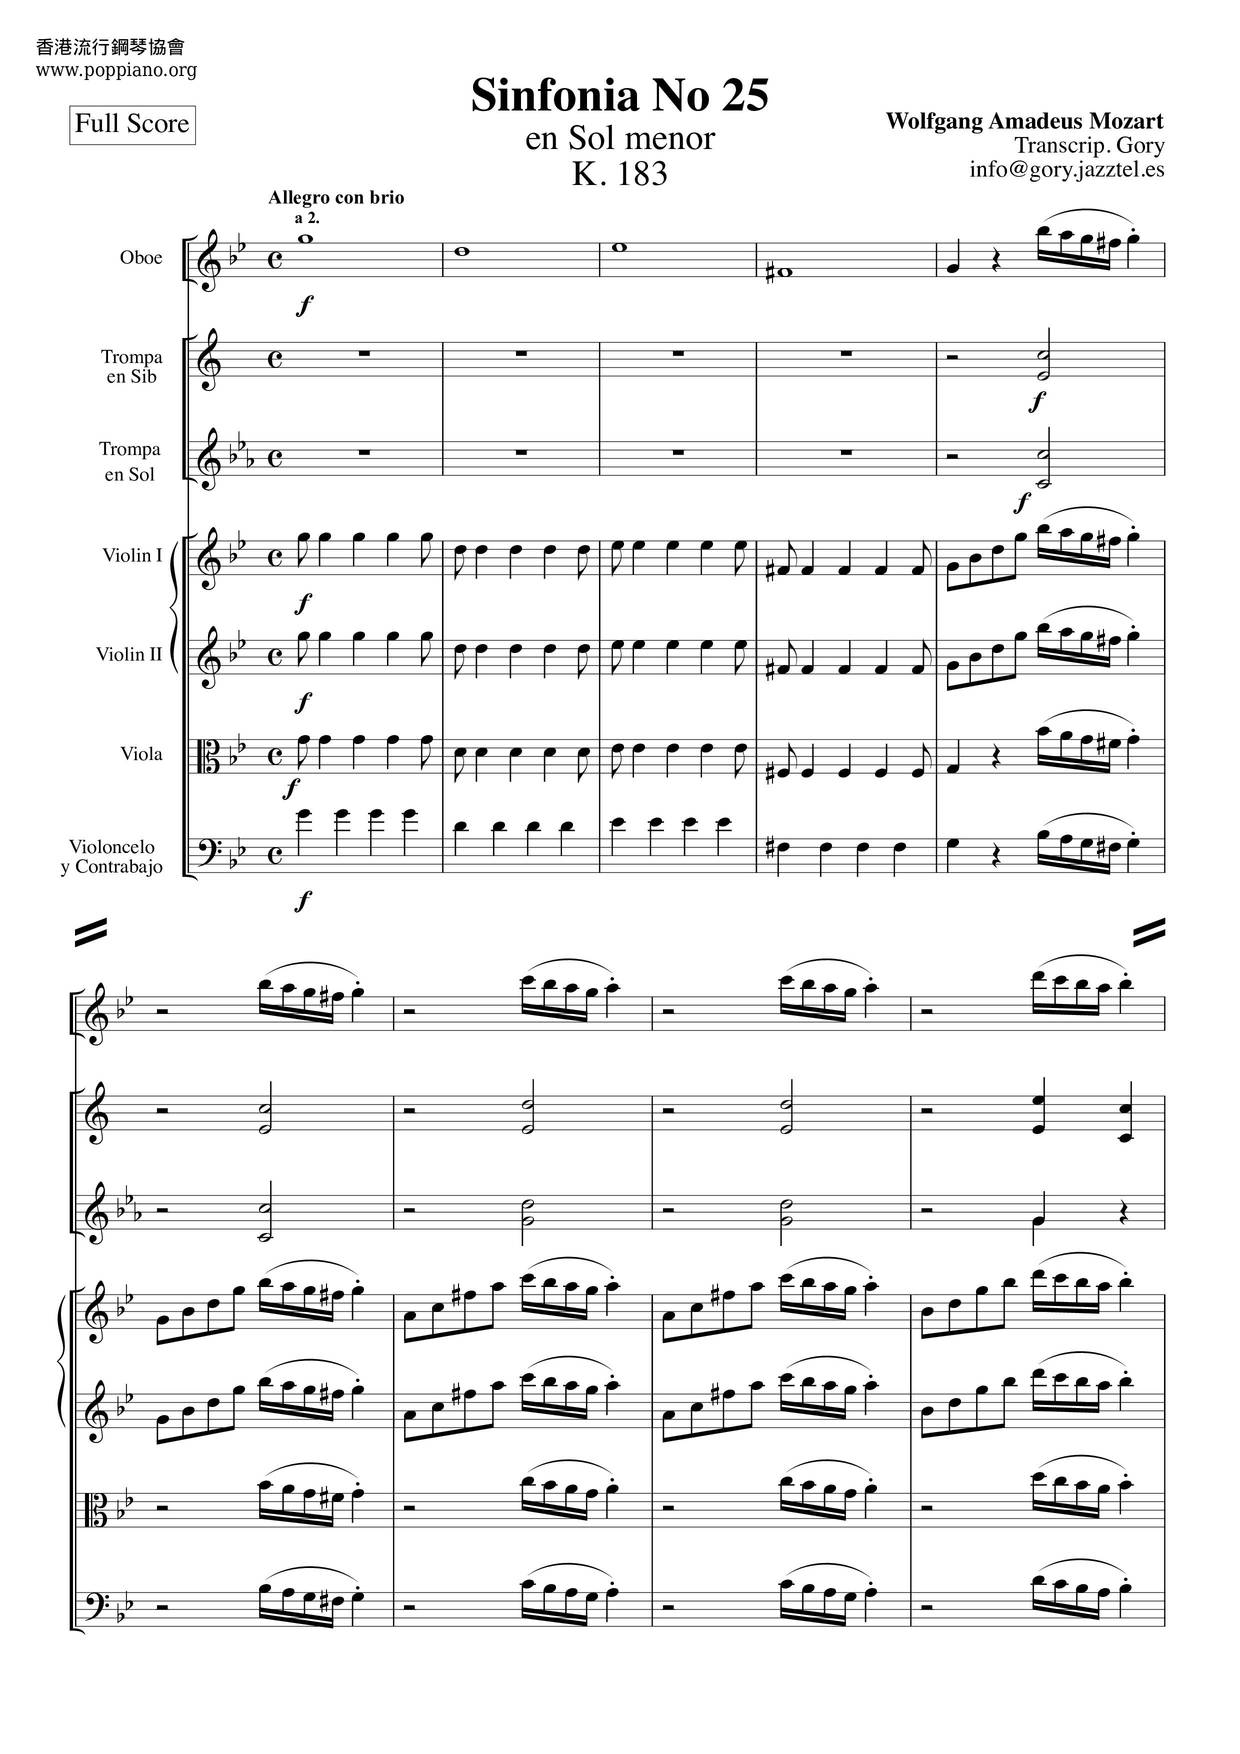 Symphony No. 25 in G minor, K.183: 1. Allegro con brioピアノ譜